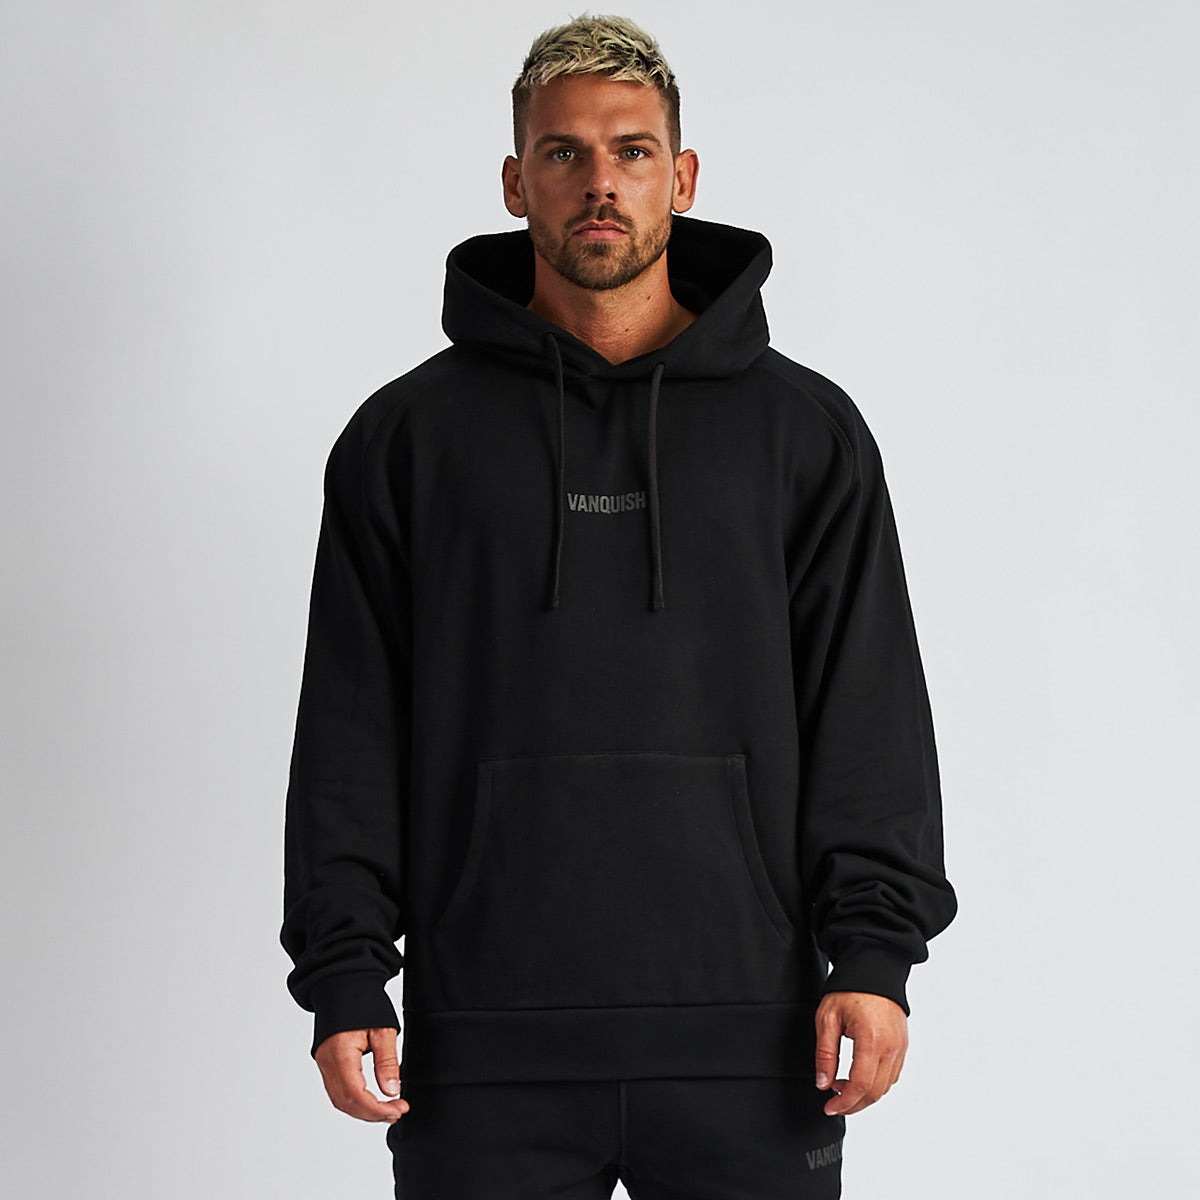 black hoodie oversized